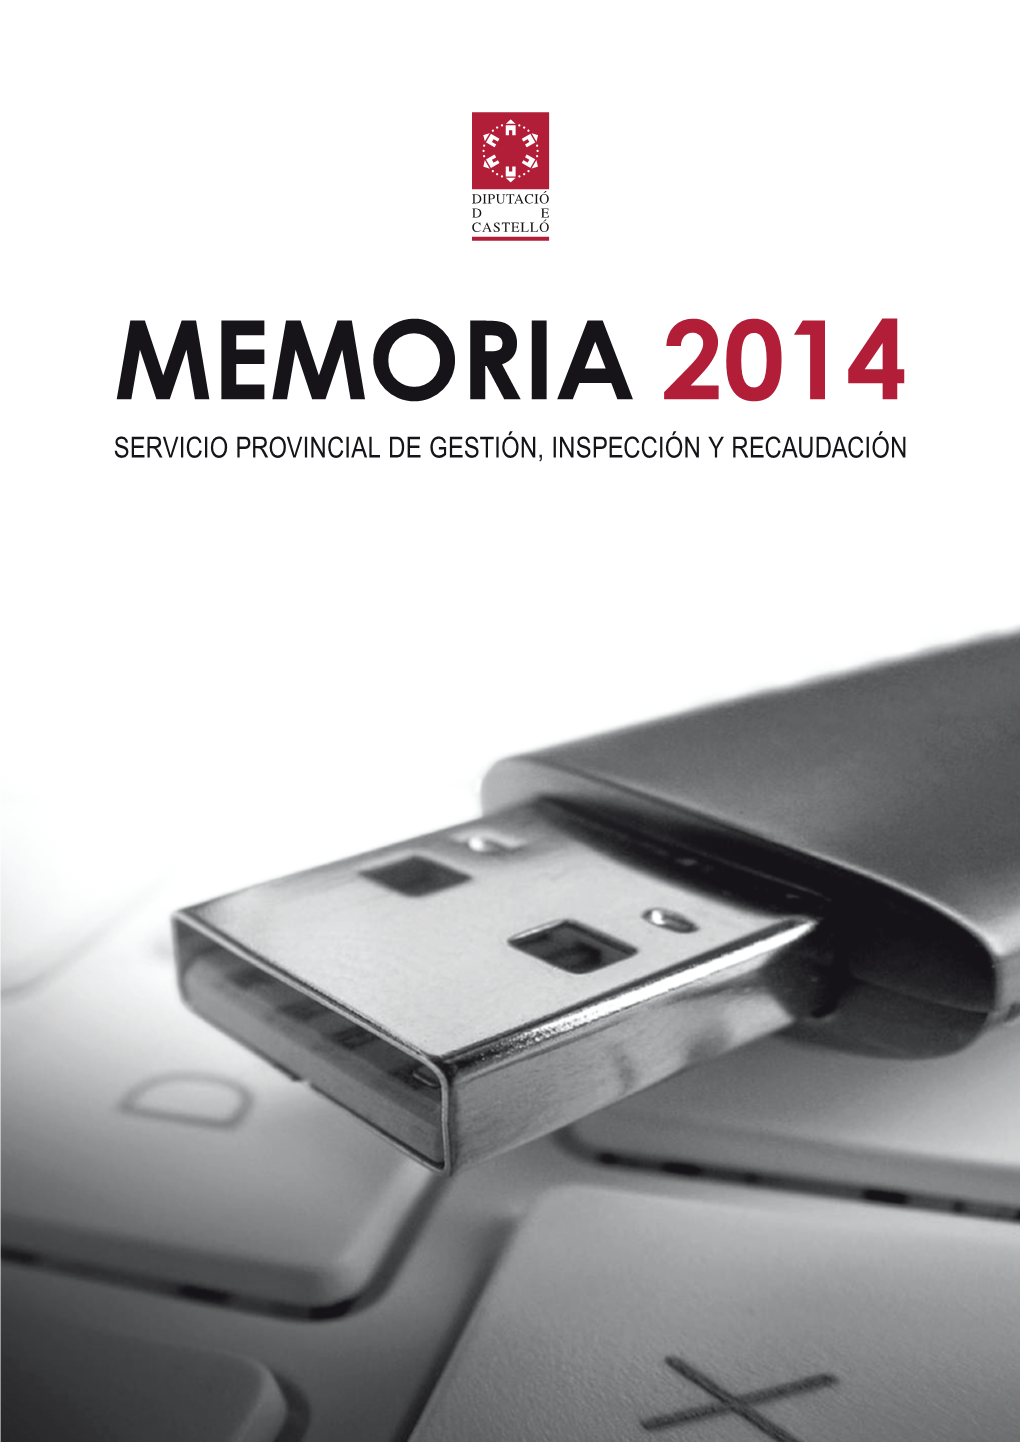 MEMORIA 2014 Servicio Provincial De Gestión, Inspección Y Recaudación